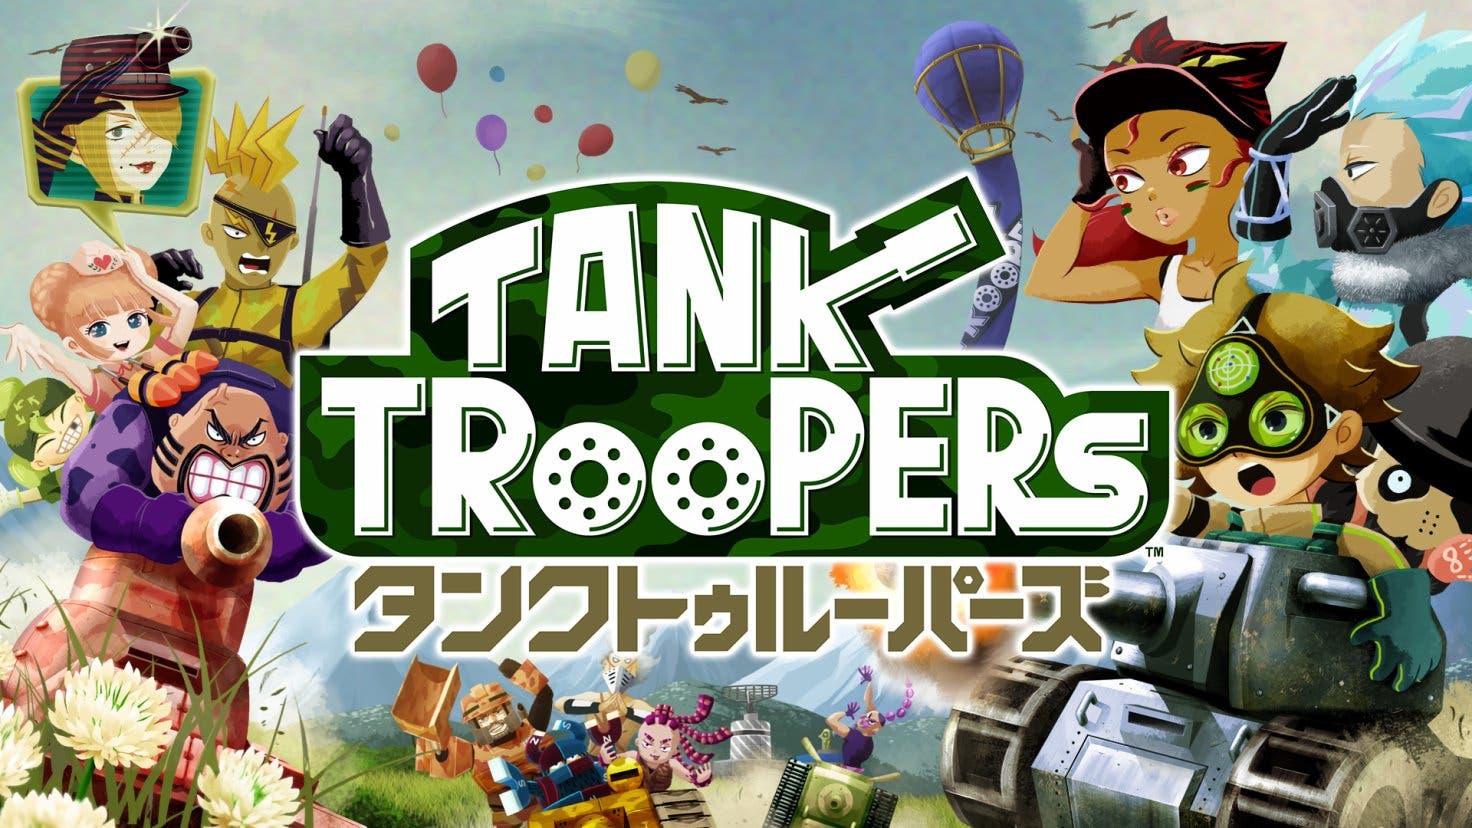 Nuevos detalles y tráiler japonés de ‘Tank Troopers’